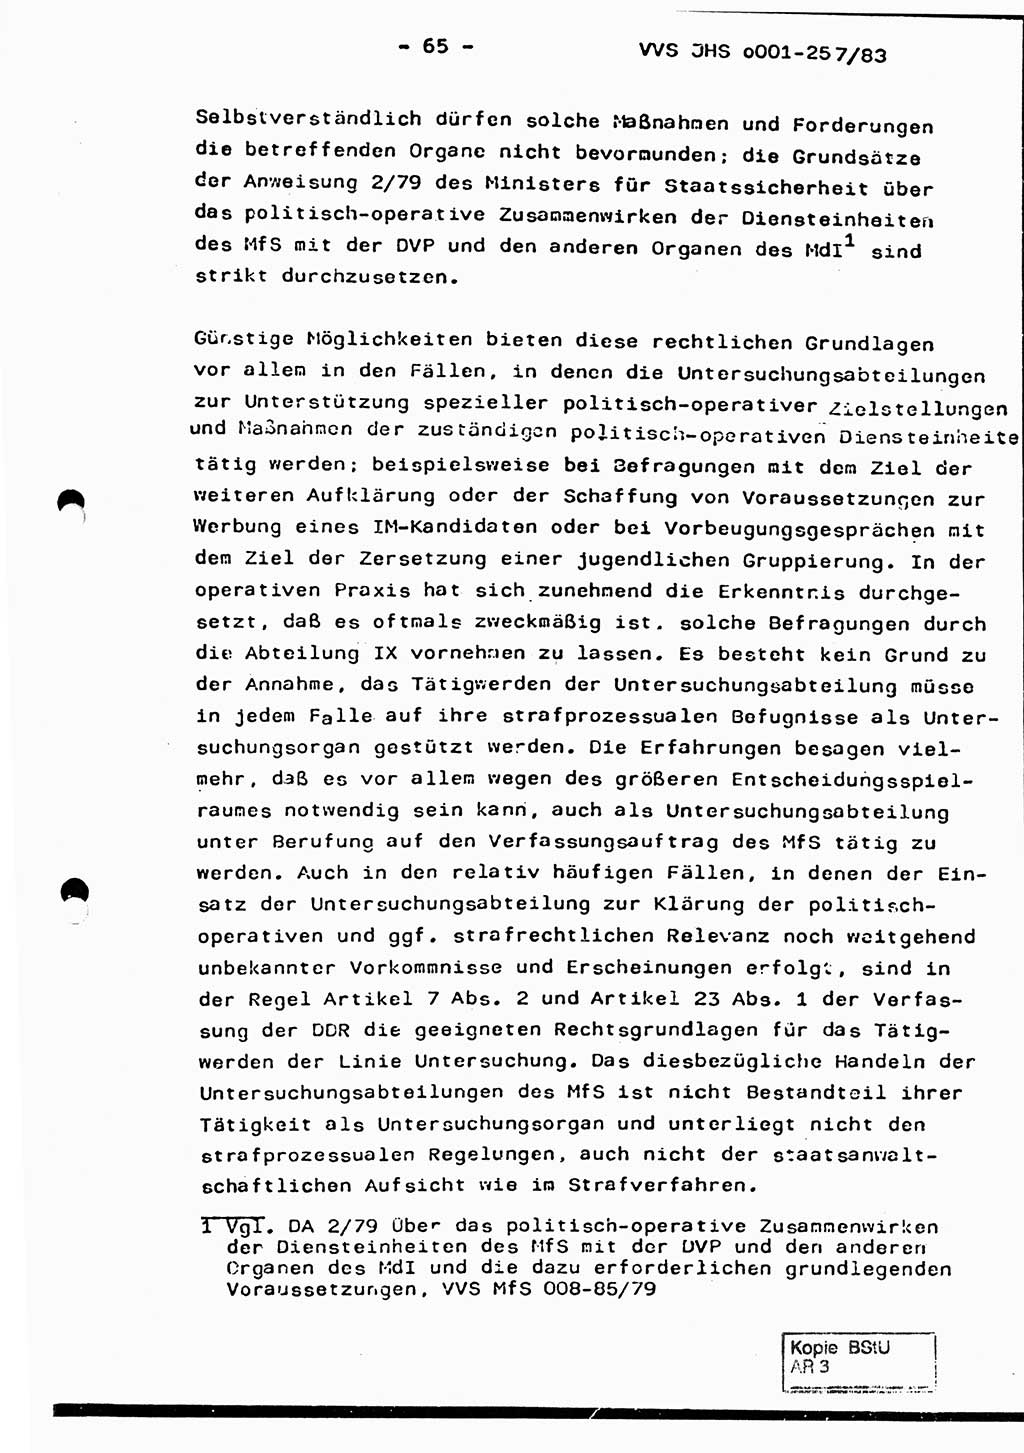 Dissertation, Oberst Helmut Lubas (BV Mdg.), Oberstleutnant Manfred Eschberger (HA IX), Oberleutnant Hans-Jürgen Ludwig (JHS), Ministerium für Staatssicherheit (MfS) [Deutsche Demokratische Republik (DDR)], Juristische Hochschule (JHS), Vertrauliche Verschlußsache (VVS) o001-257/83, Potsdam 1983, Seite 65 (Diss. MfS DDR JHS VVS o001-257/83 1983, S. 65)